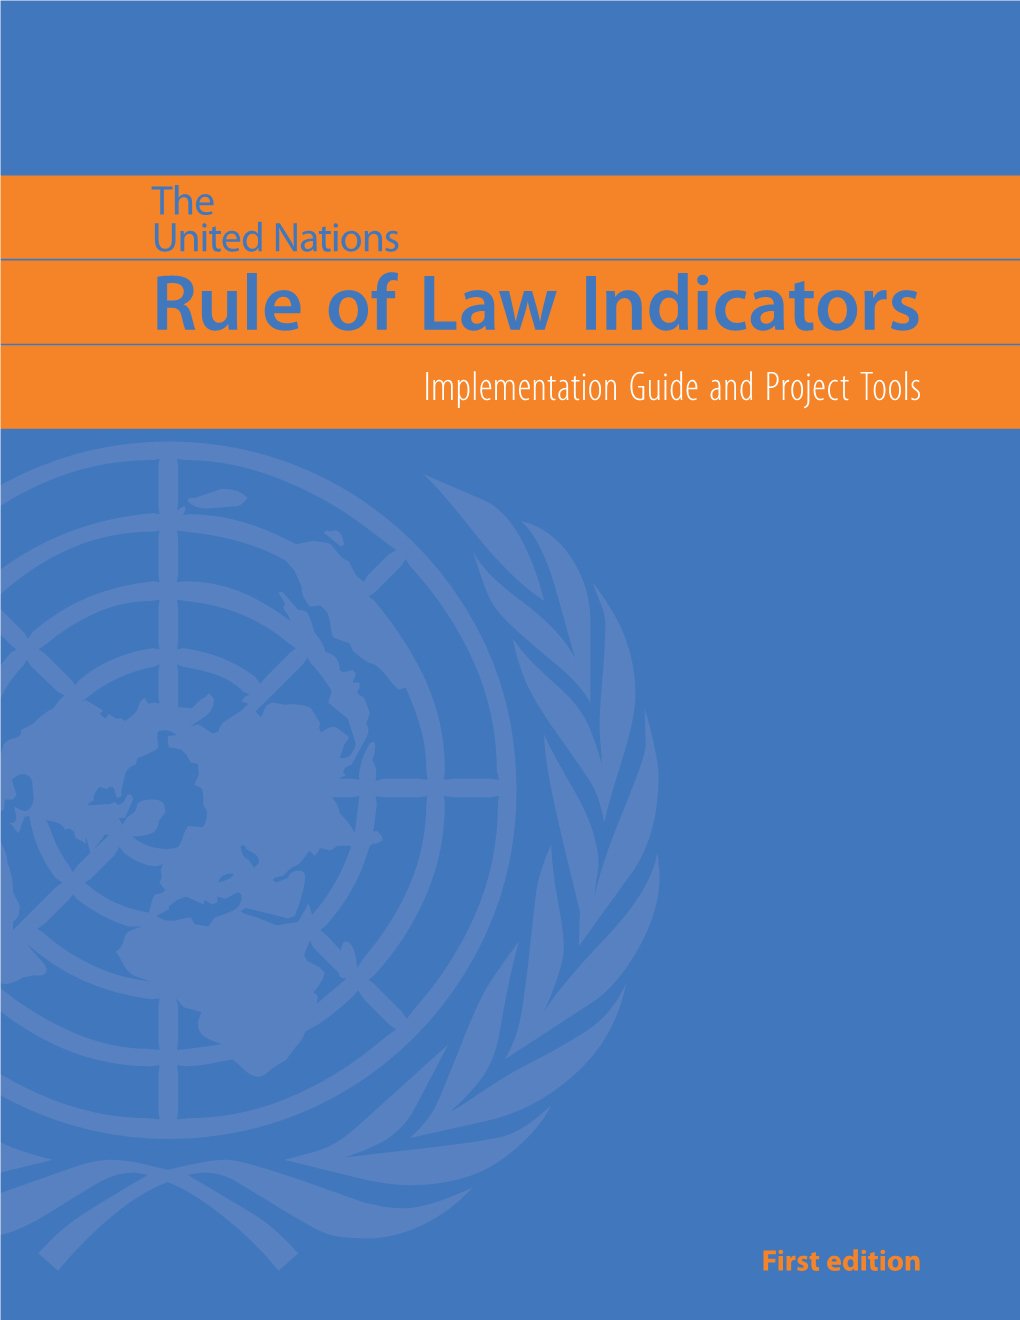 UN Rule of Law Indicators